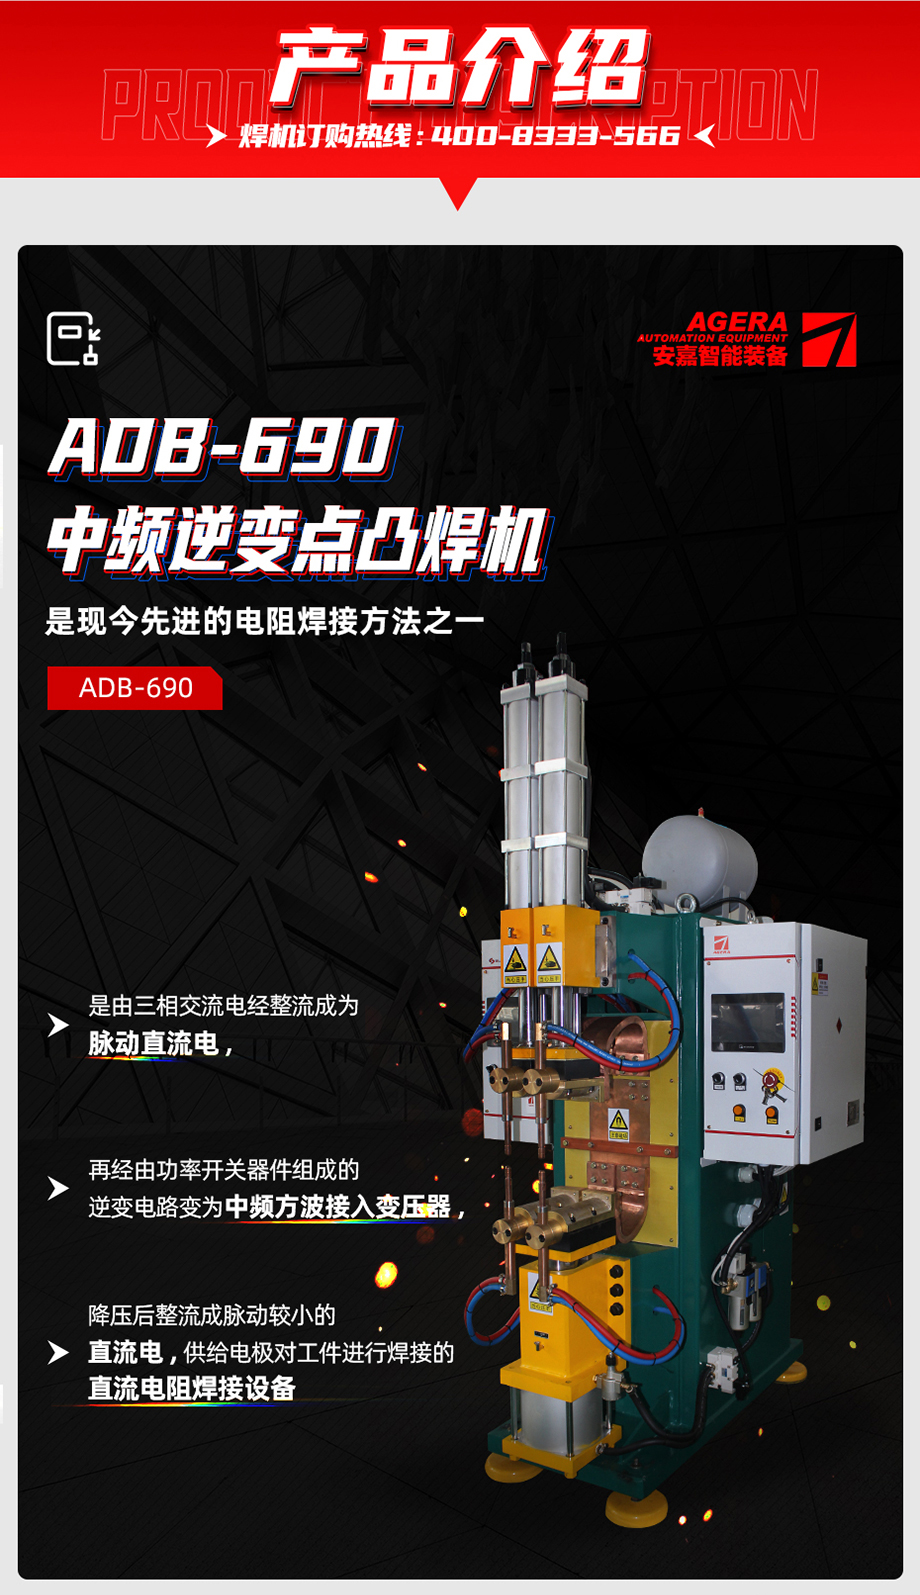 ADB-690中频点焊机产品介绍